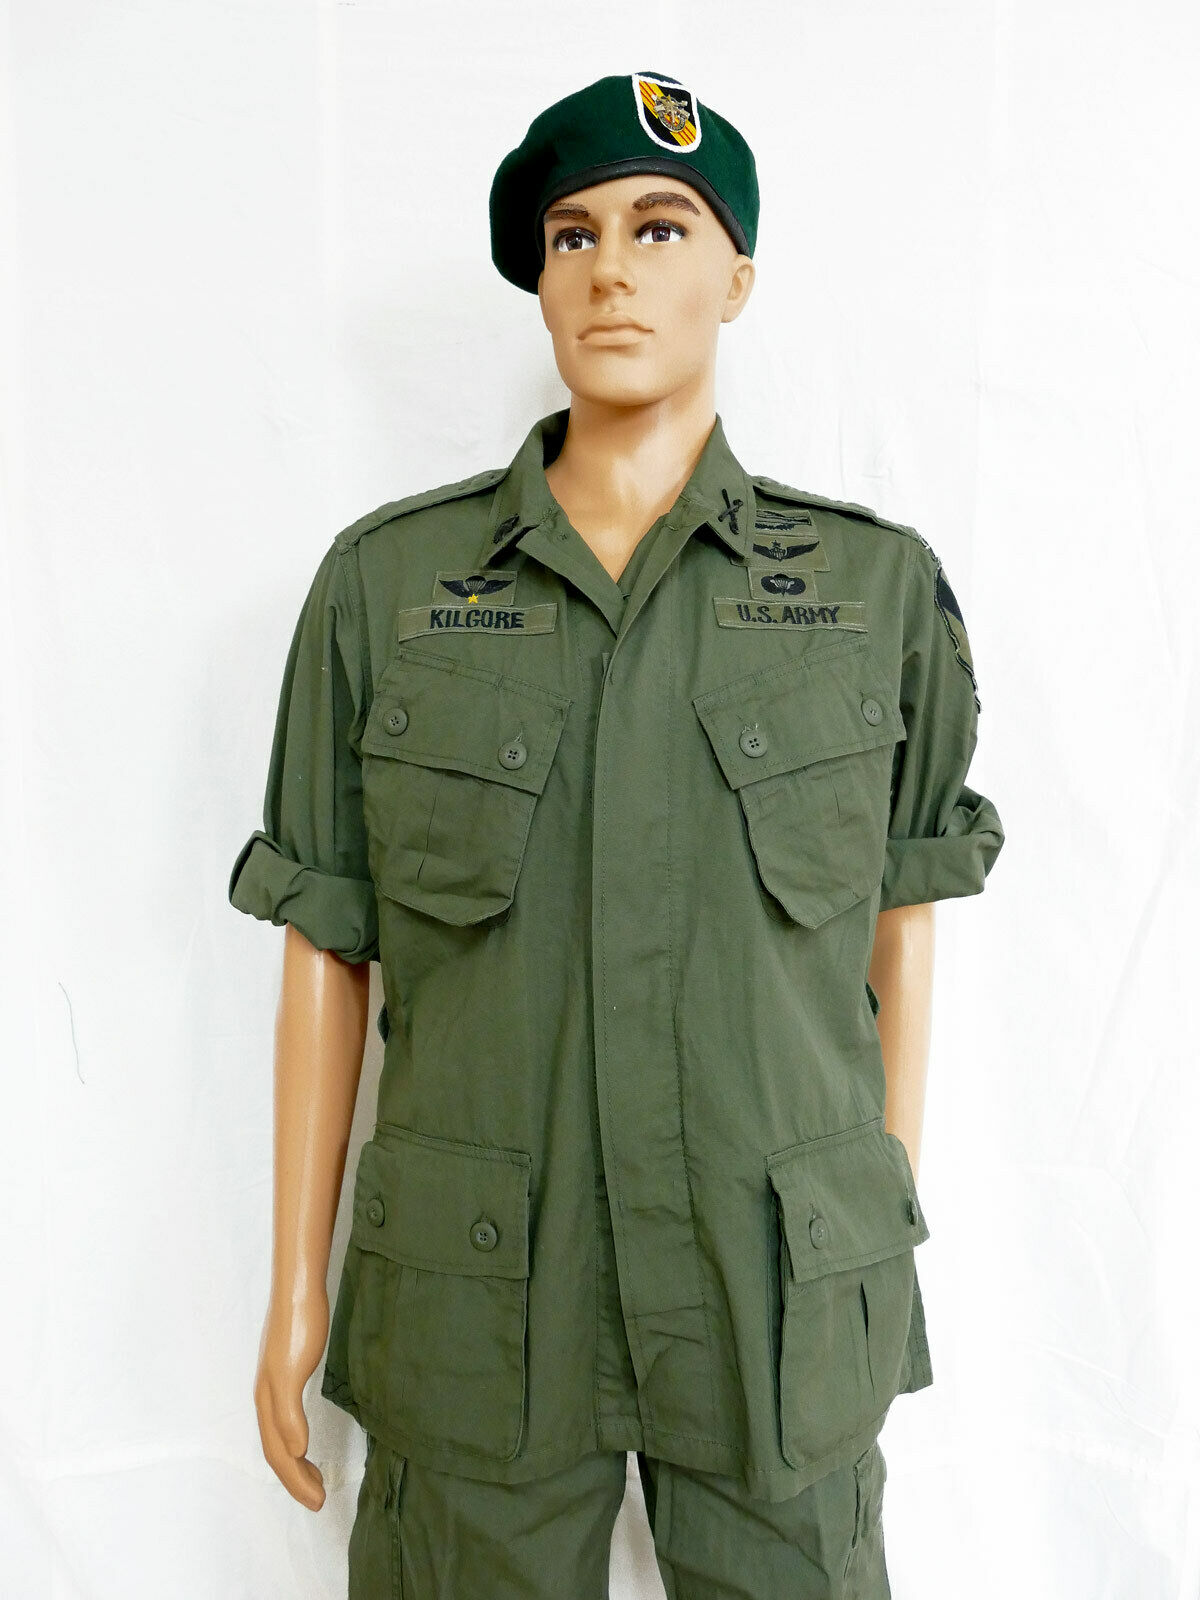 US Army Vietnam Jungle M64 Uniform komplett Lt Colonel Bill Kilgore Kostüm Hut